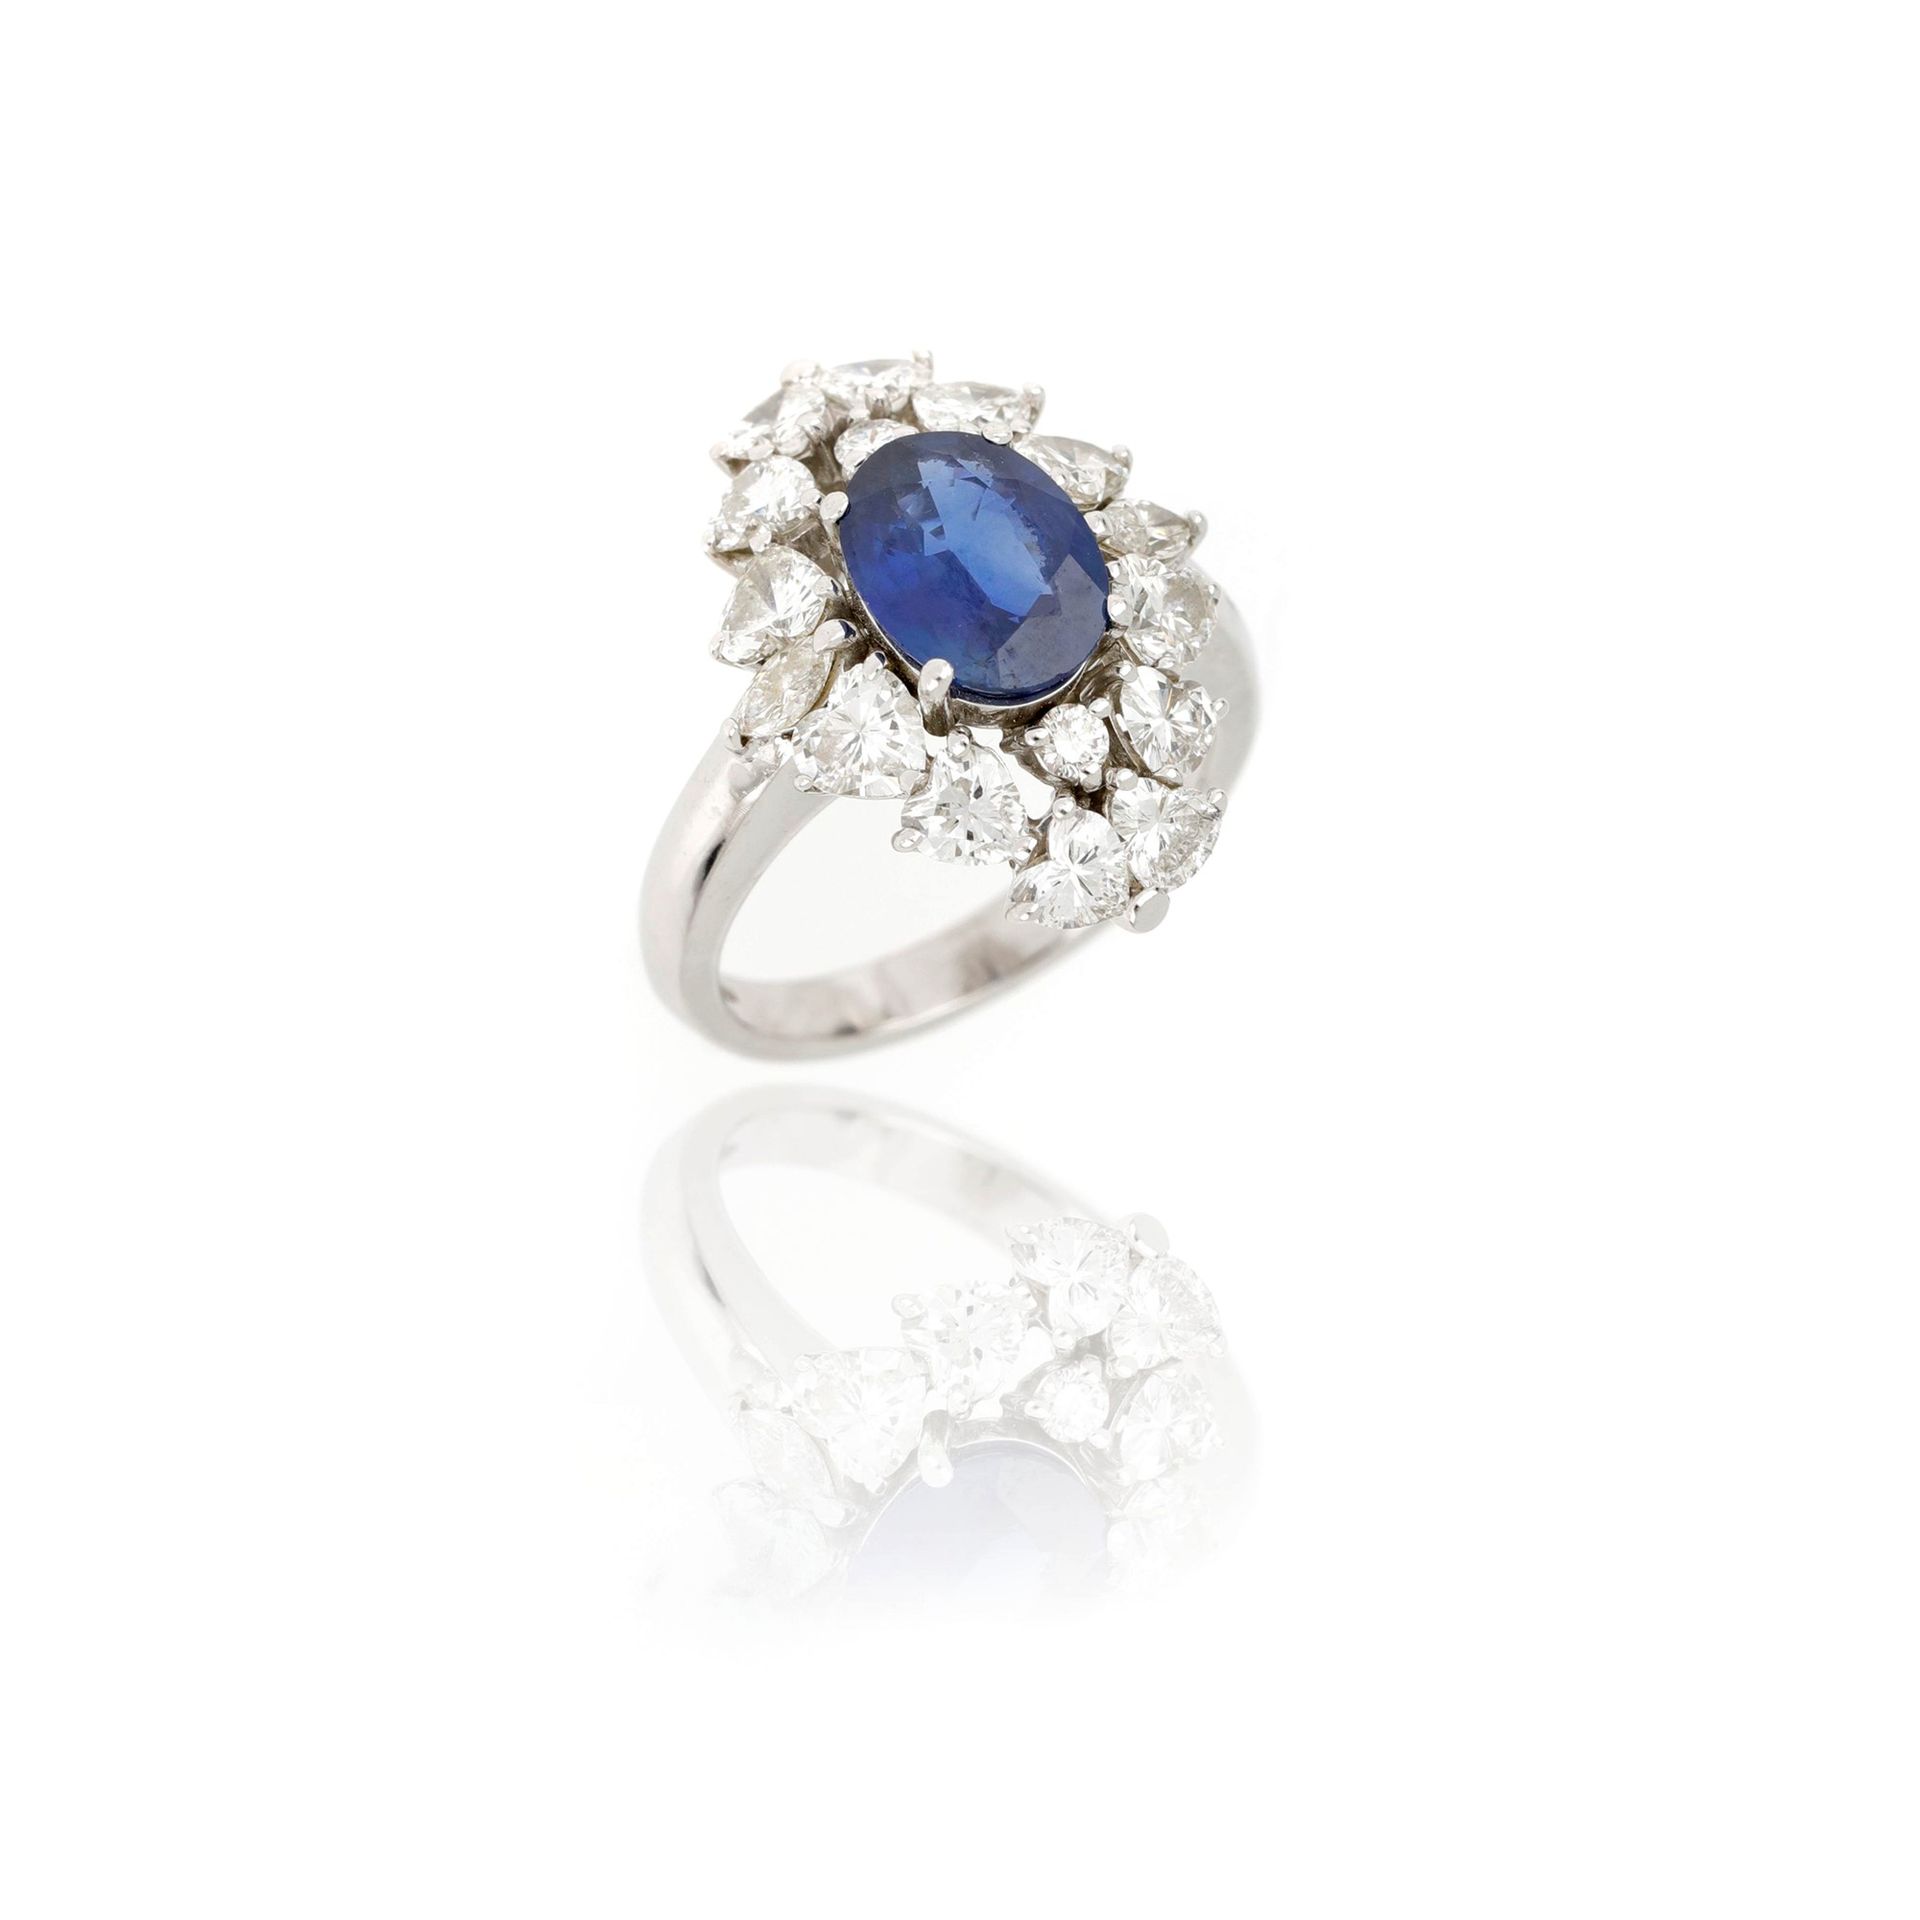 Null 18K白金戒指，镶有一颗椭圆形蓝宝石，重约1.75克拉，周围有圆形明亮式切割和心形切割钻石，共重约2.15克拉，尺寸为11/51，重7.11克。

1&hellip;